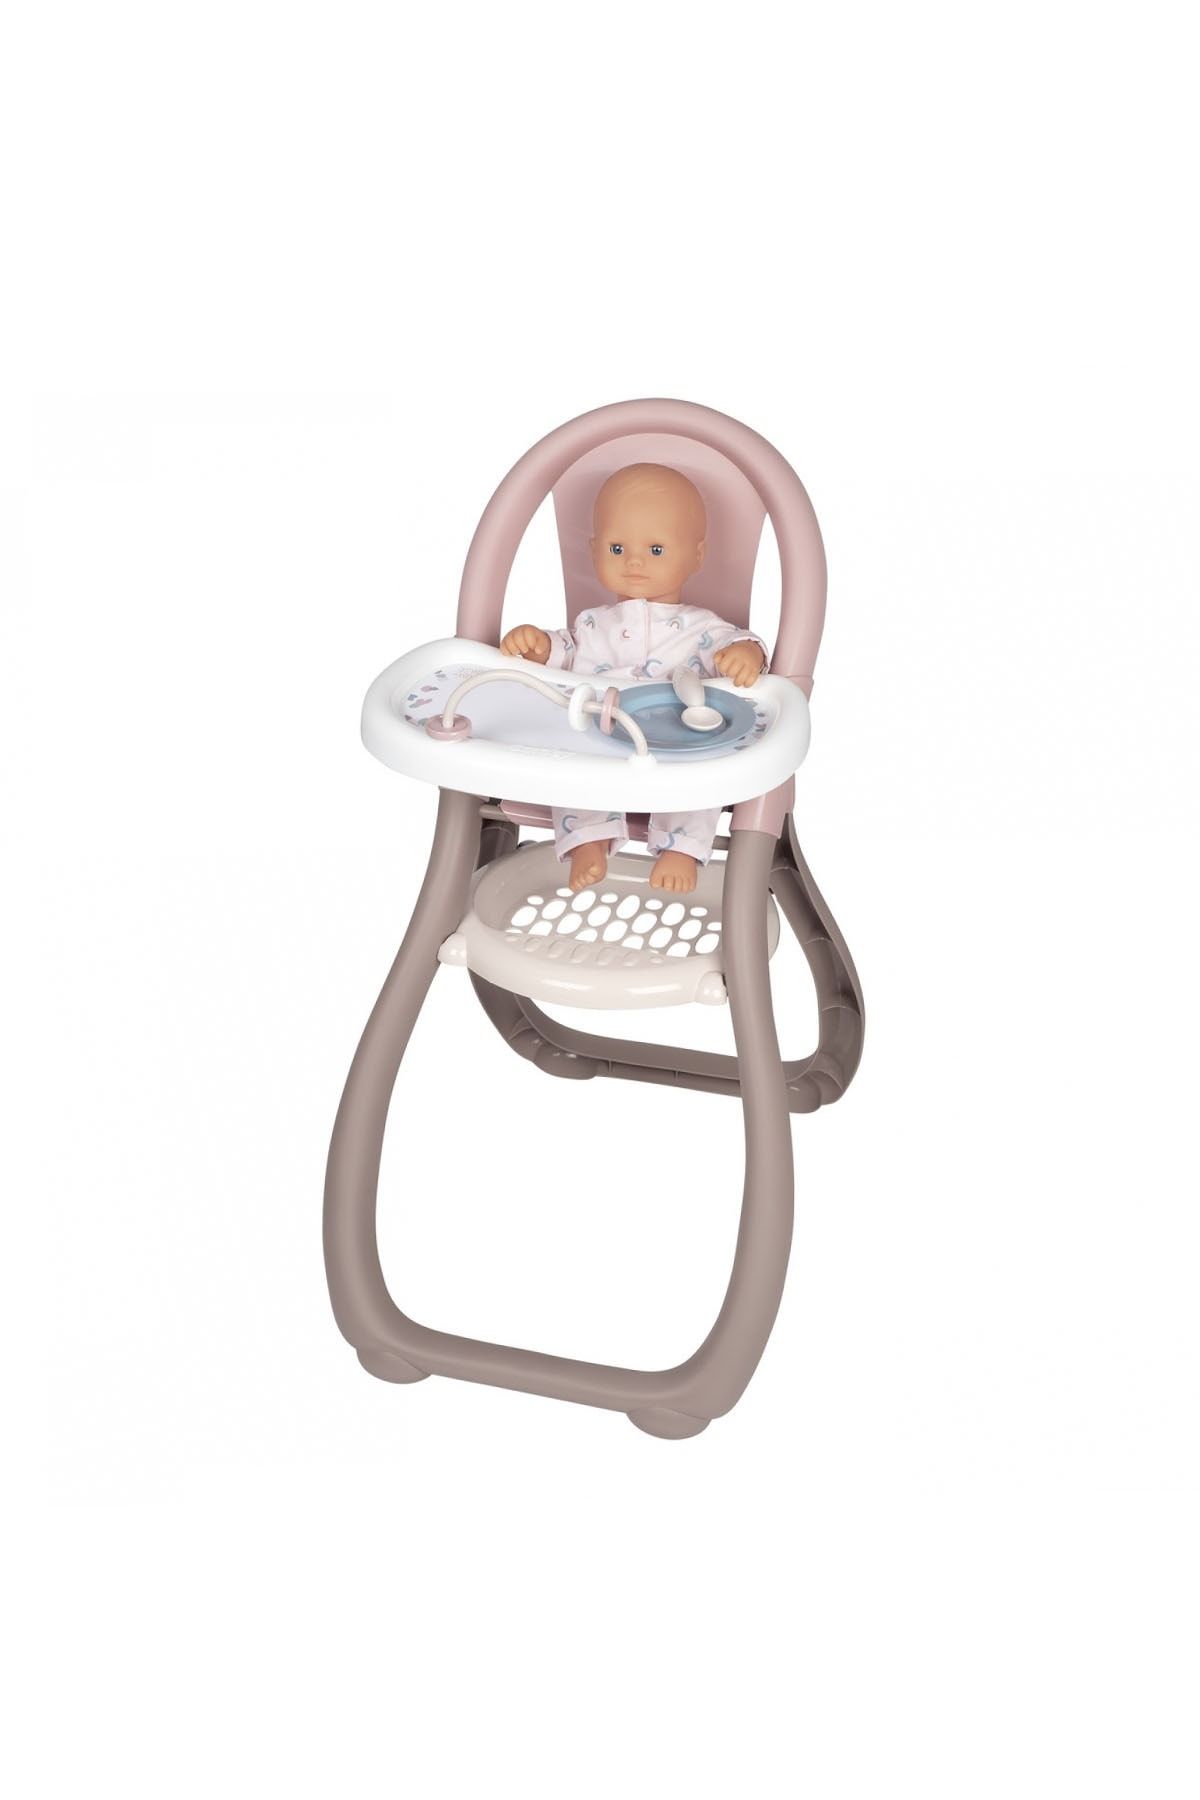 Smoby , 220370, Baby Nurse Oyuncak Mama Sandalyesi, Baby Nurse Toy Highchair